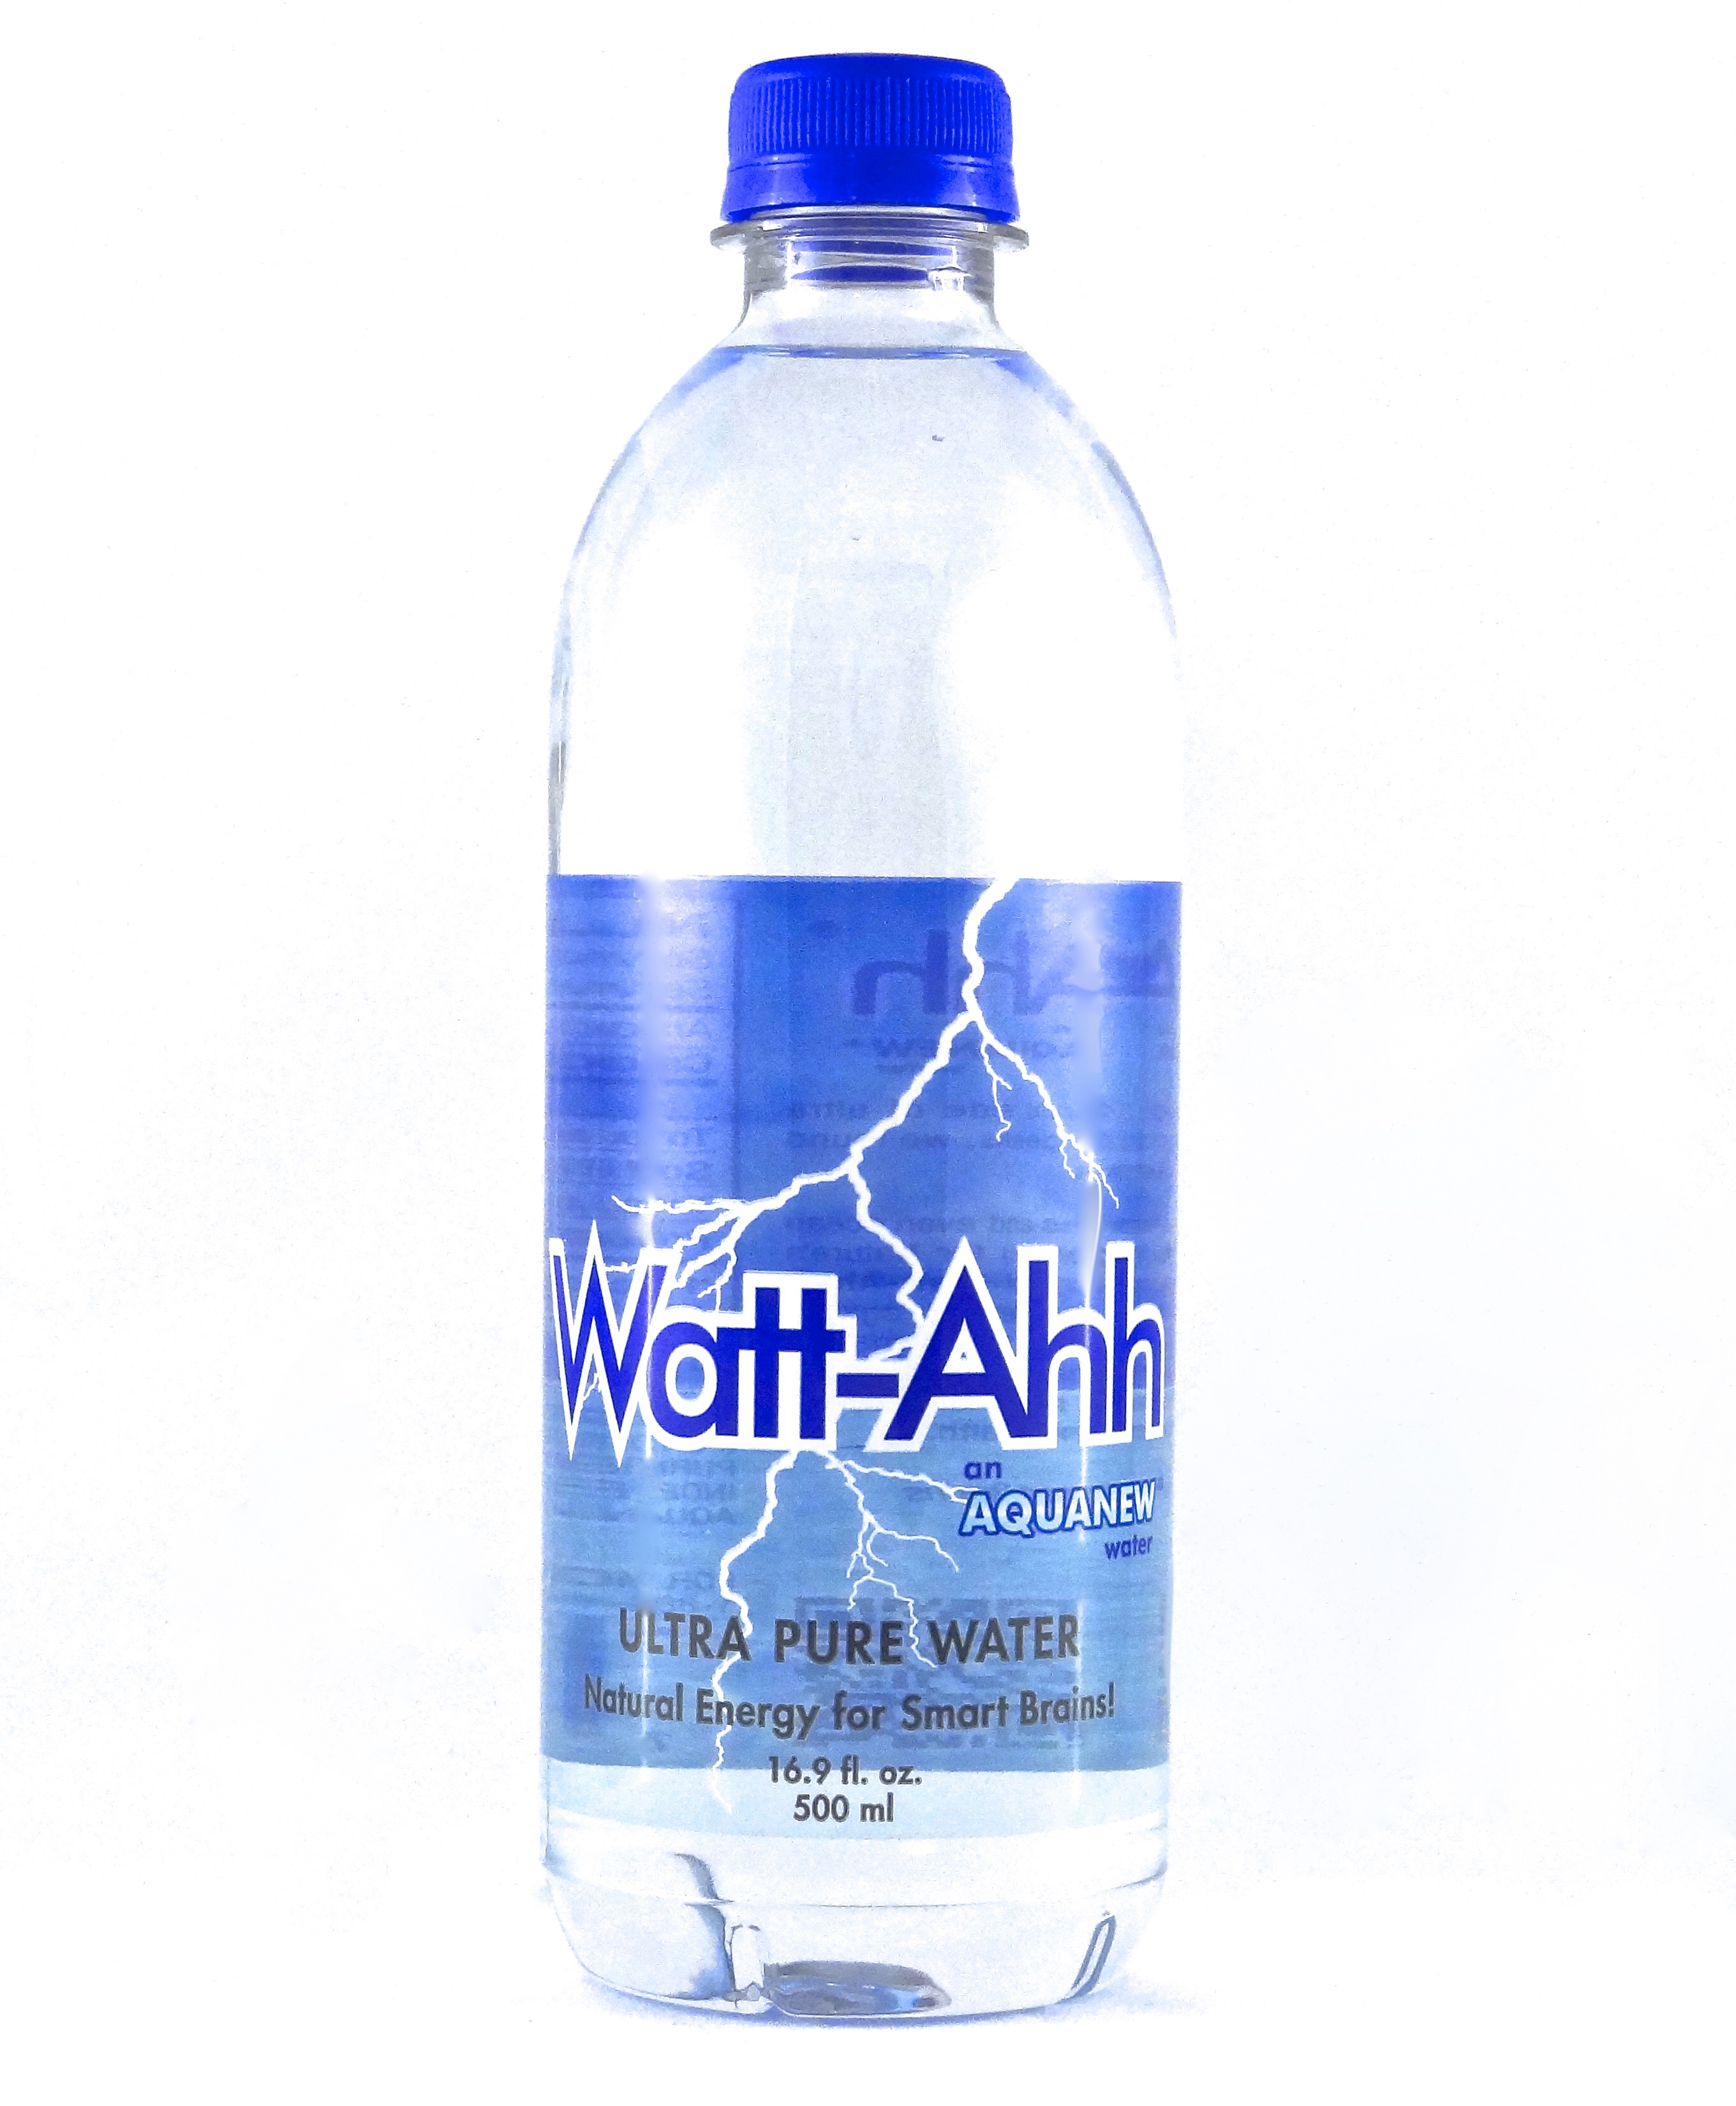 Watt-Ahh bottle cutout